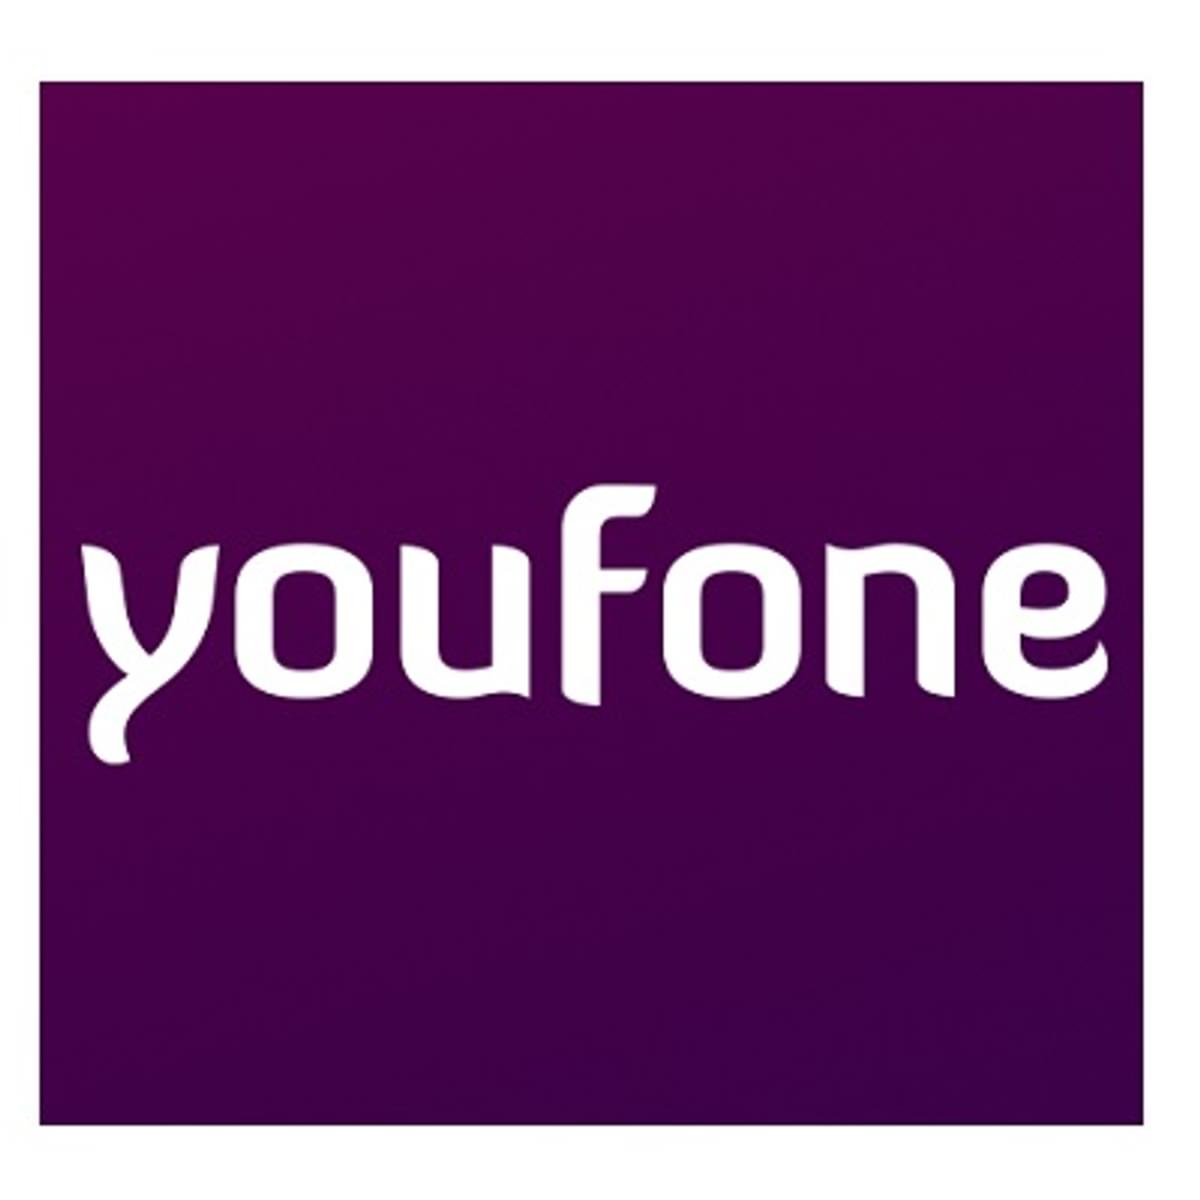 Youfone wordt nieuwe speler op de zakelijke telecom markt image